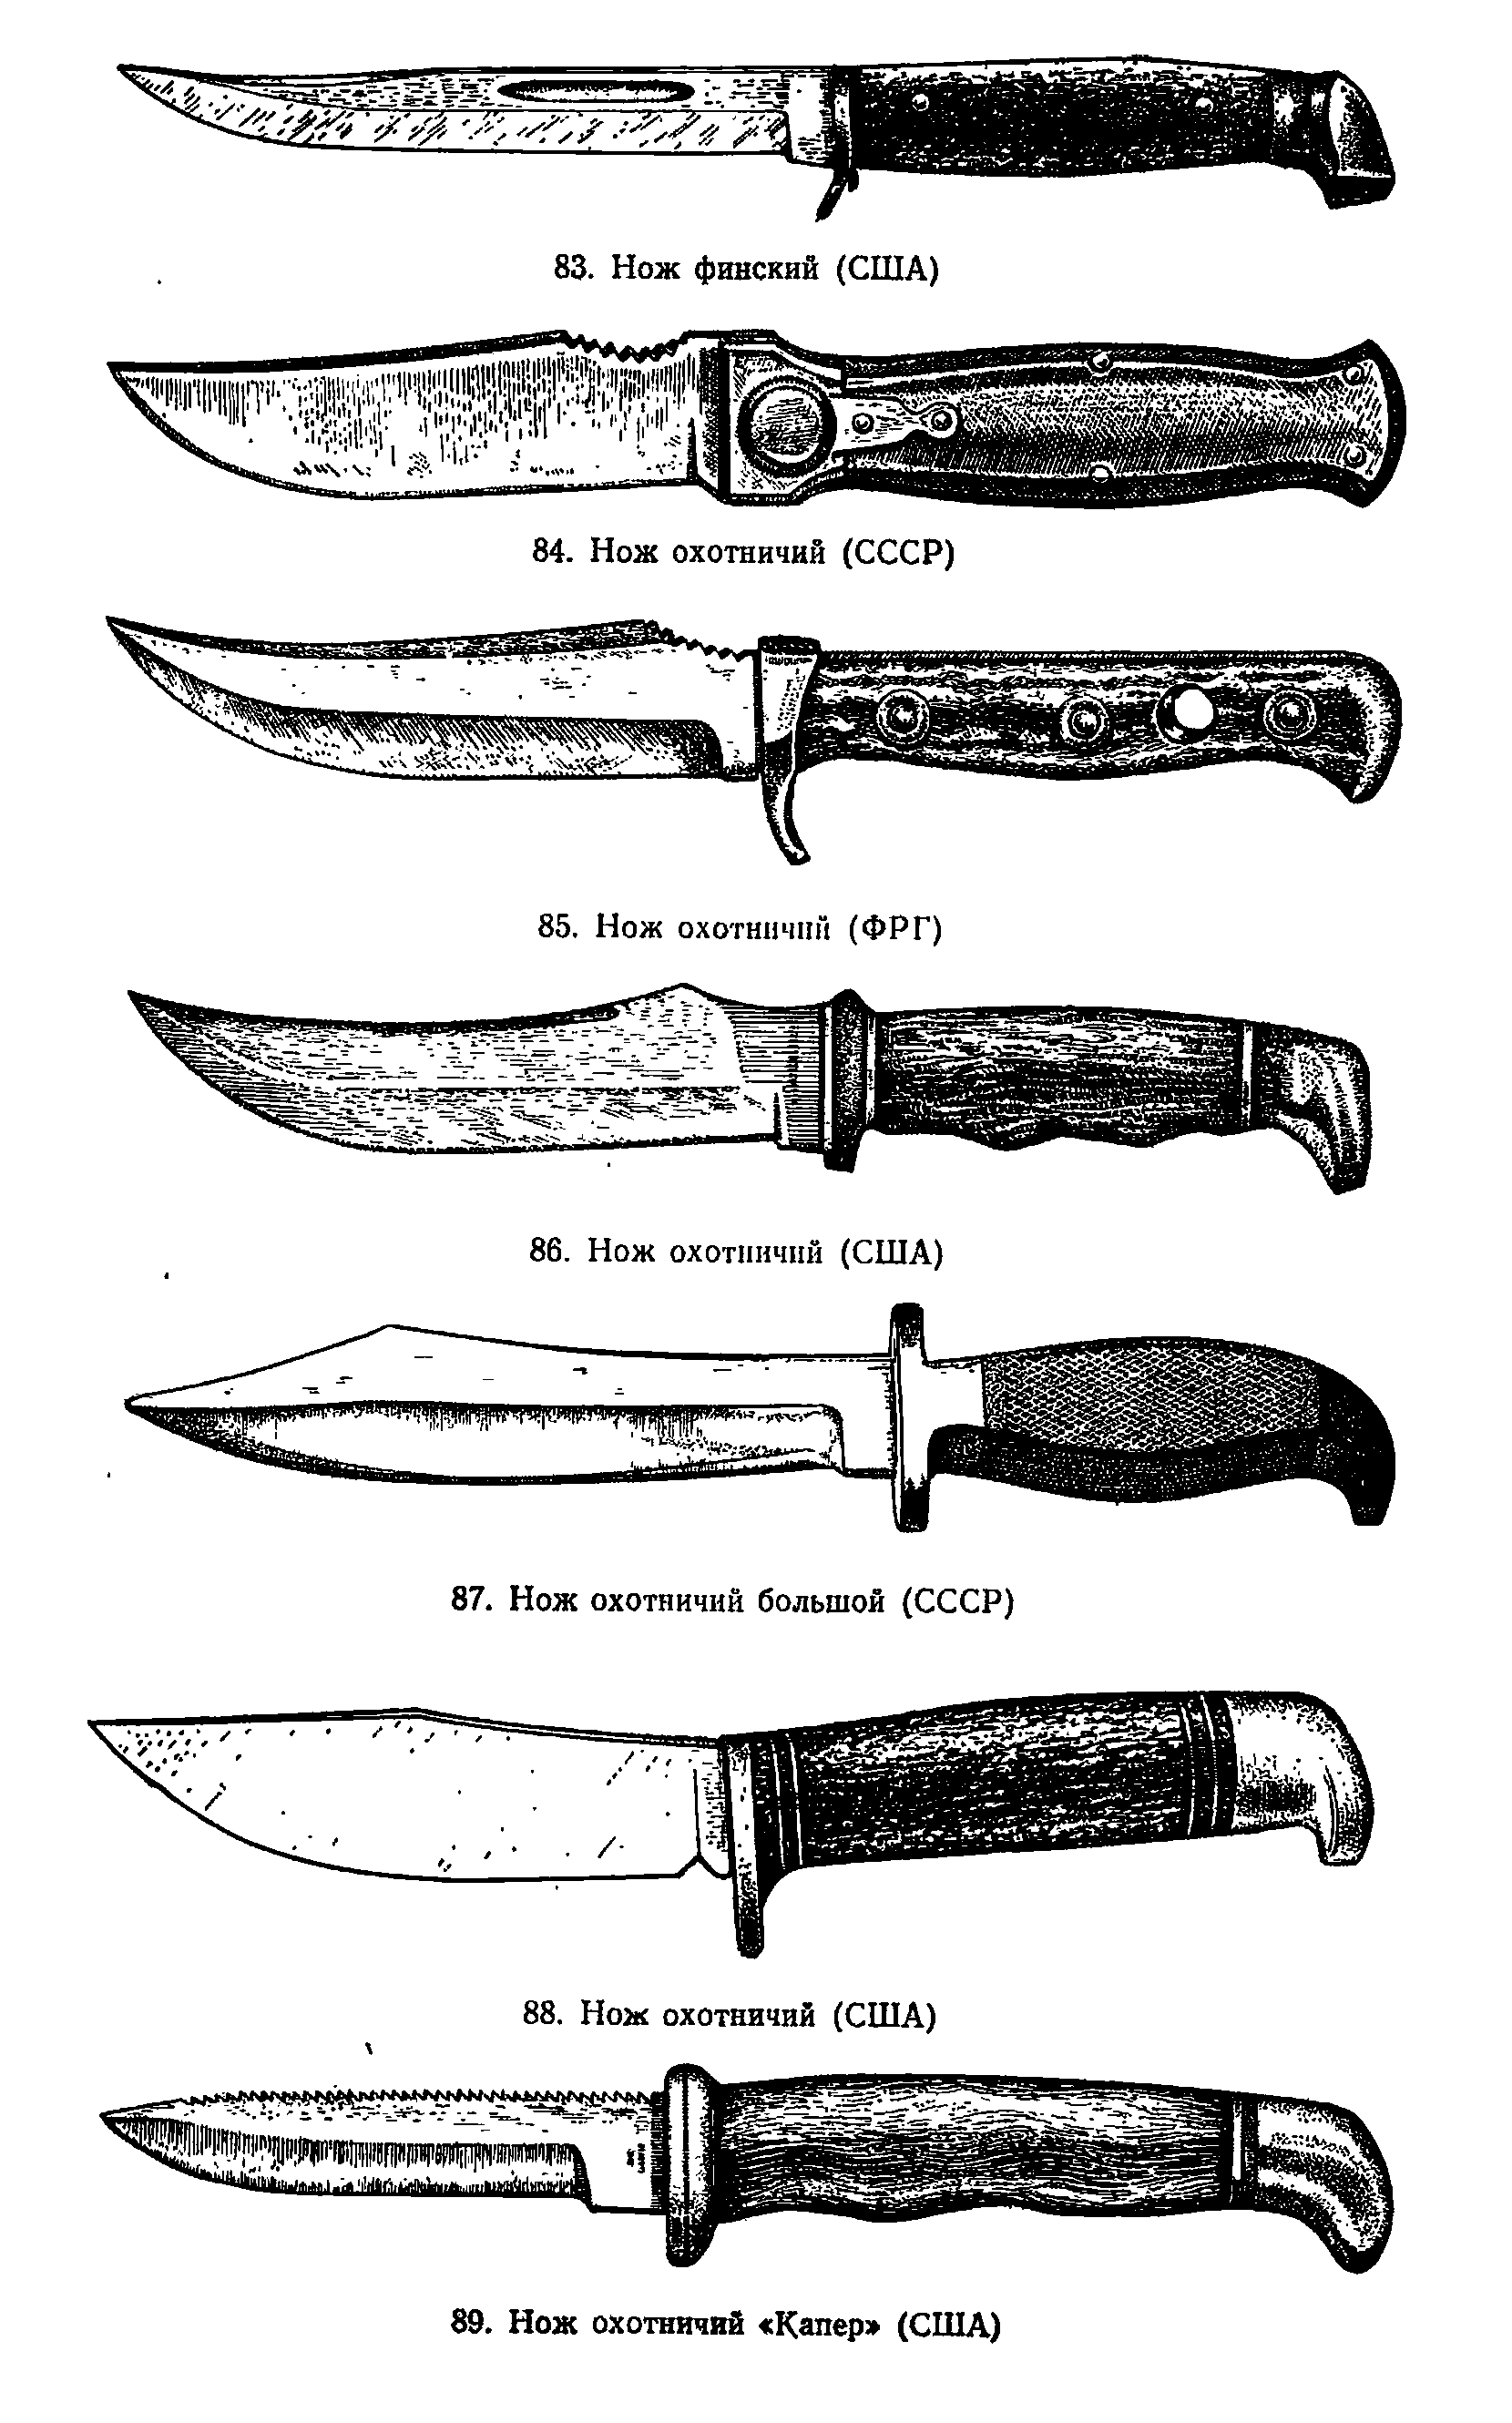 Как отличить нож